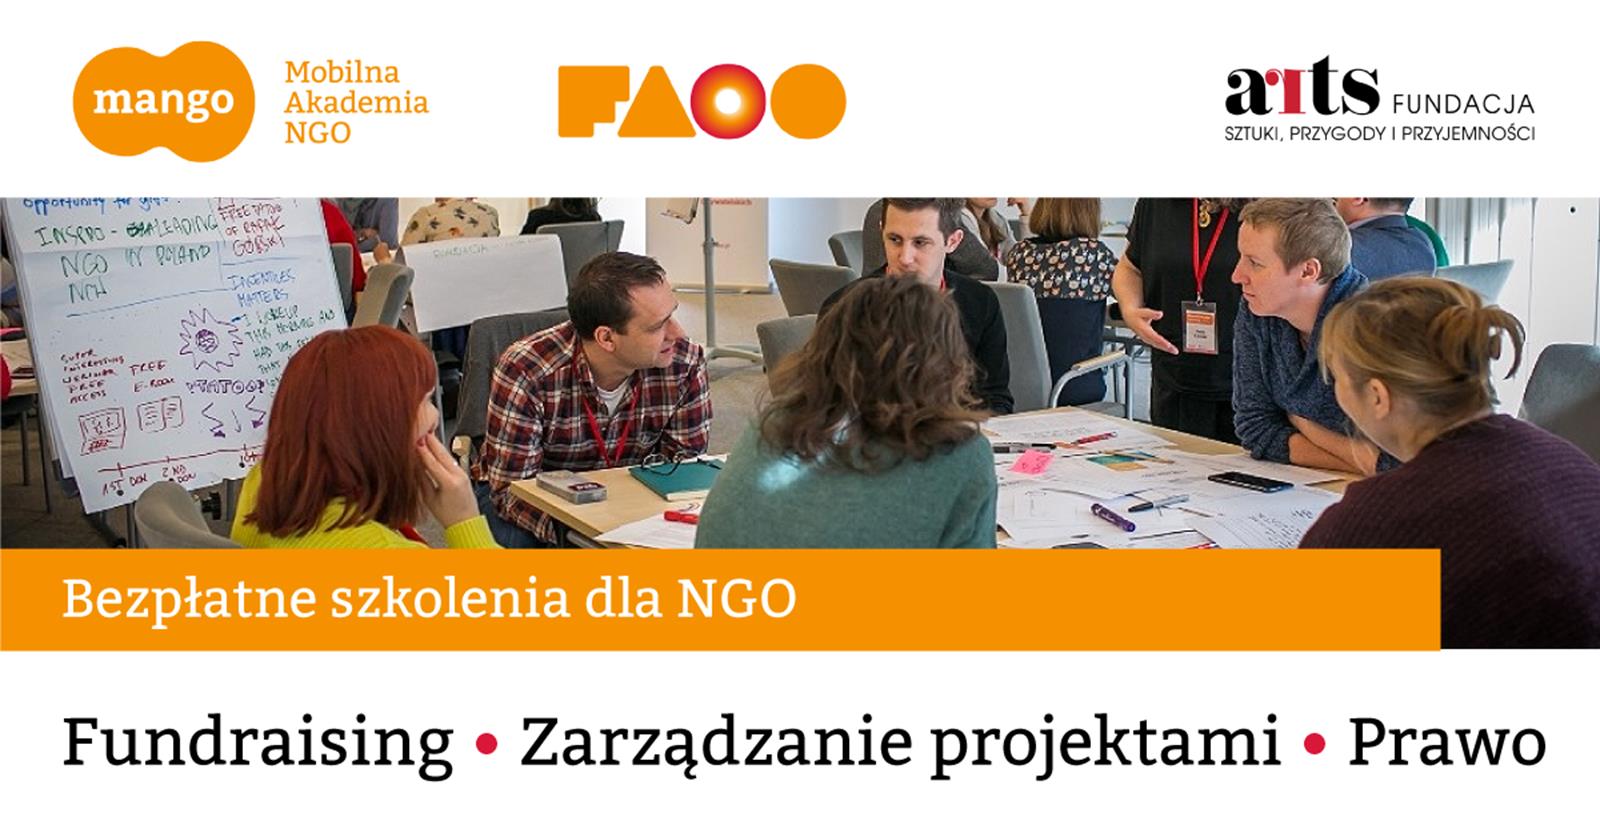 Bezpłatne Szkolenia dla NGO - Mobilna Akademia NGO MANGO we współpracy z Fundacją ARTS